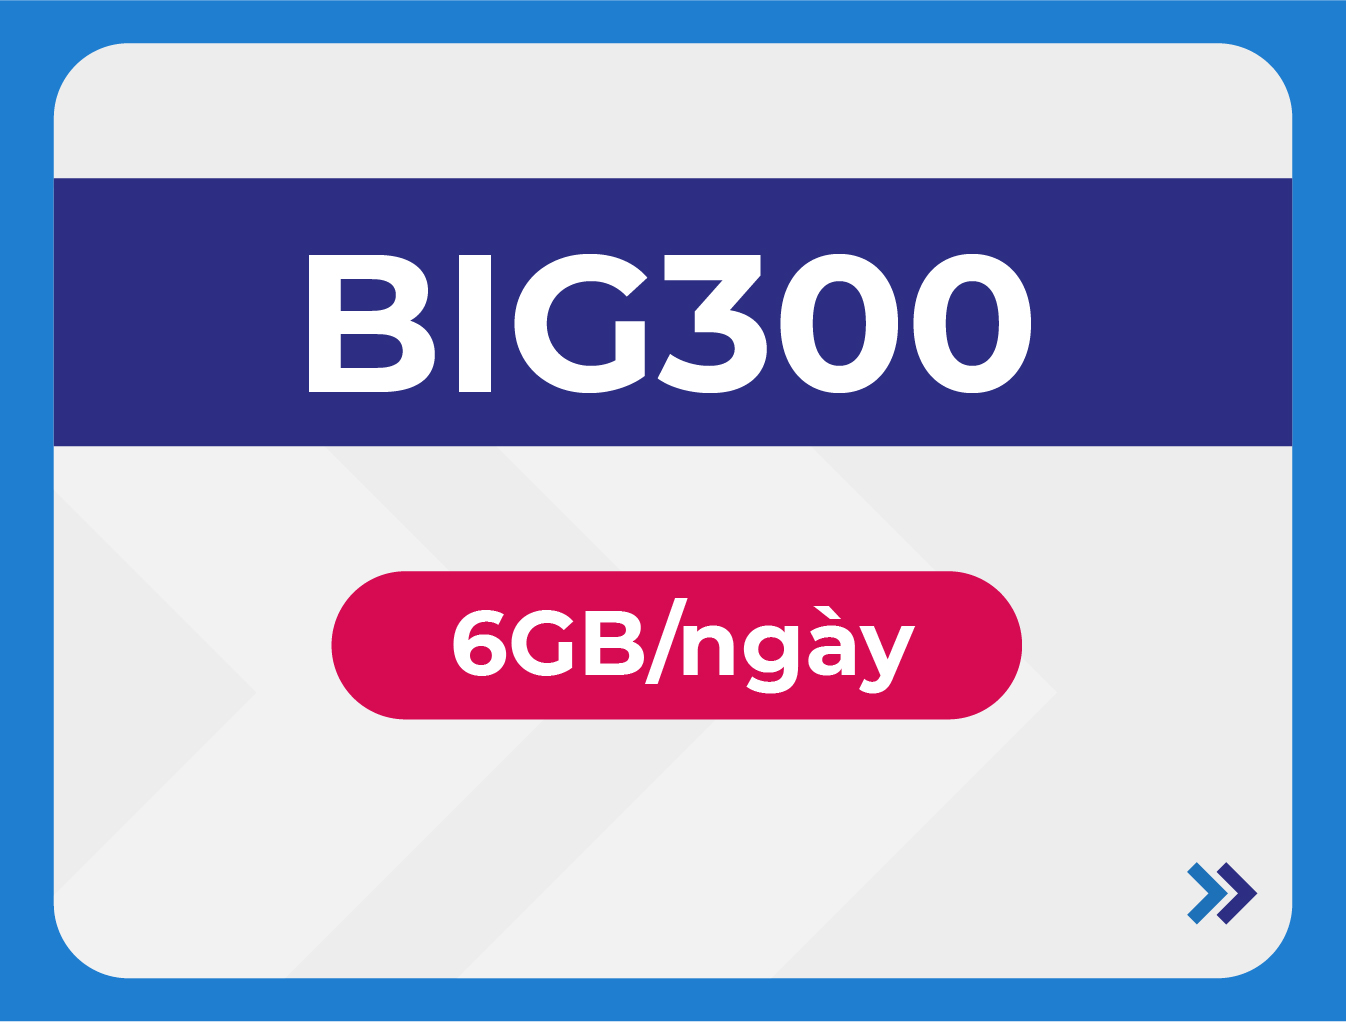 BIG300